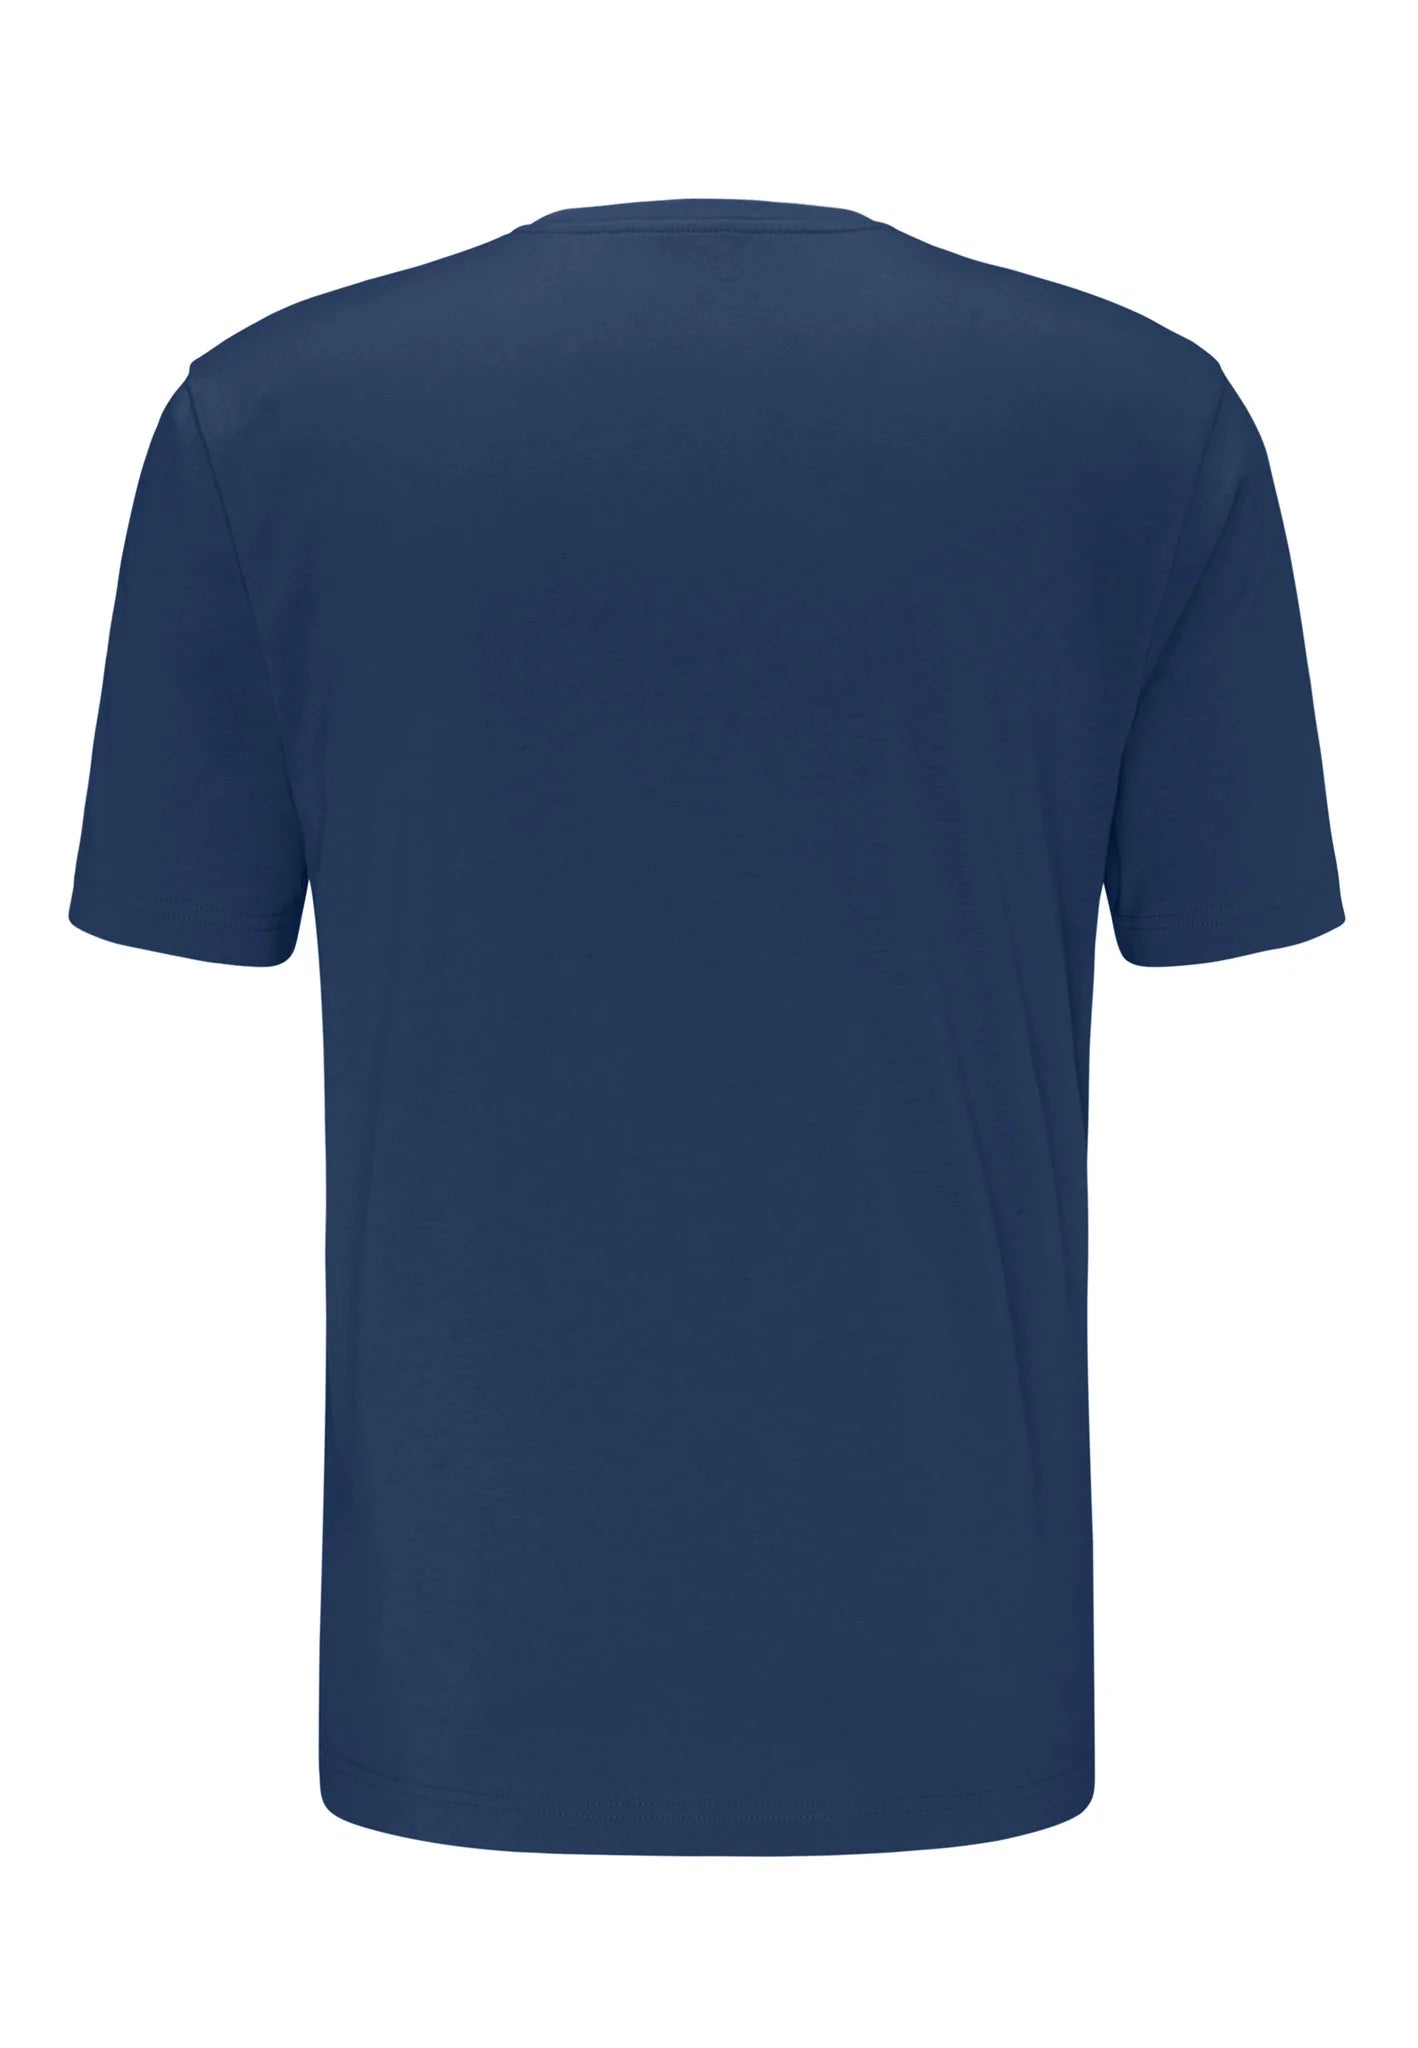 FYNCH HATTON T-Shirt - Men's Round Neck – Midnight